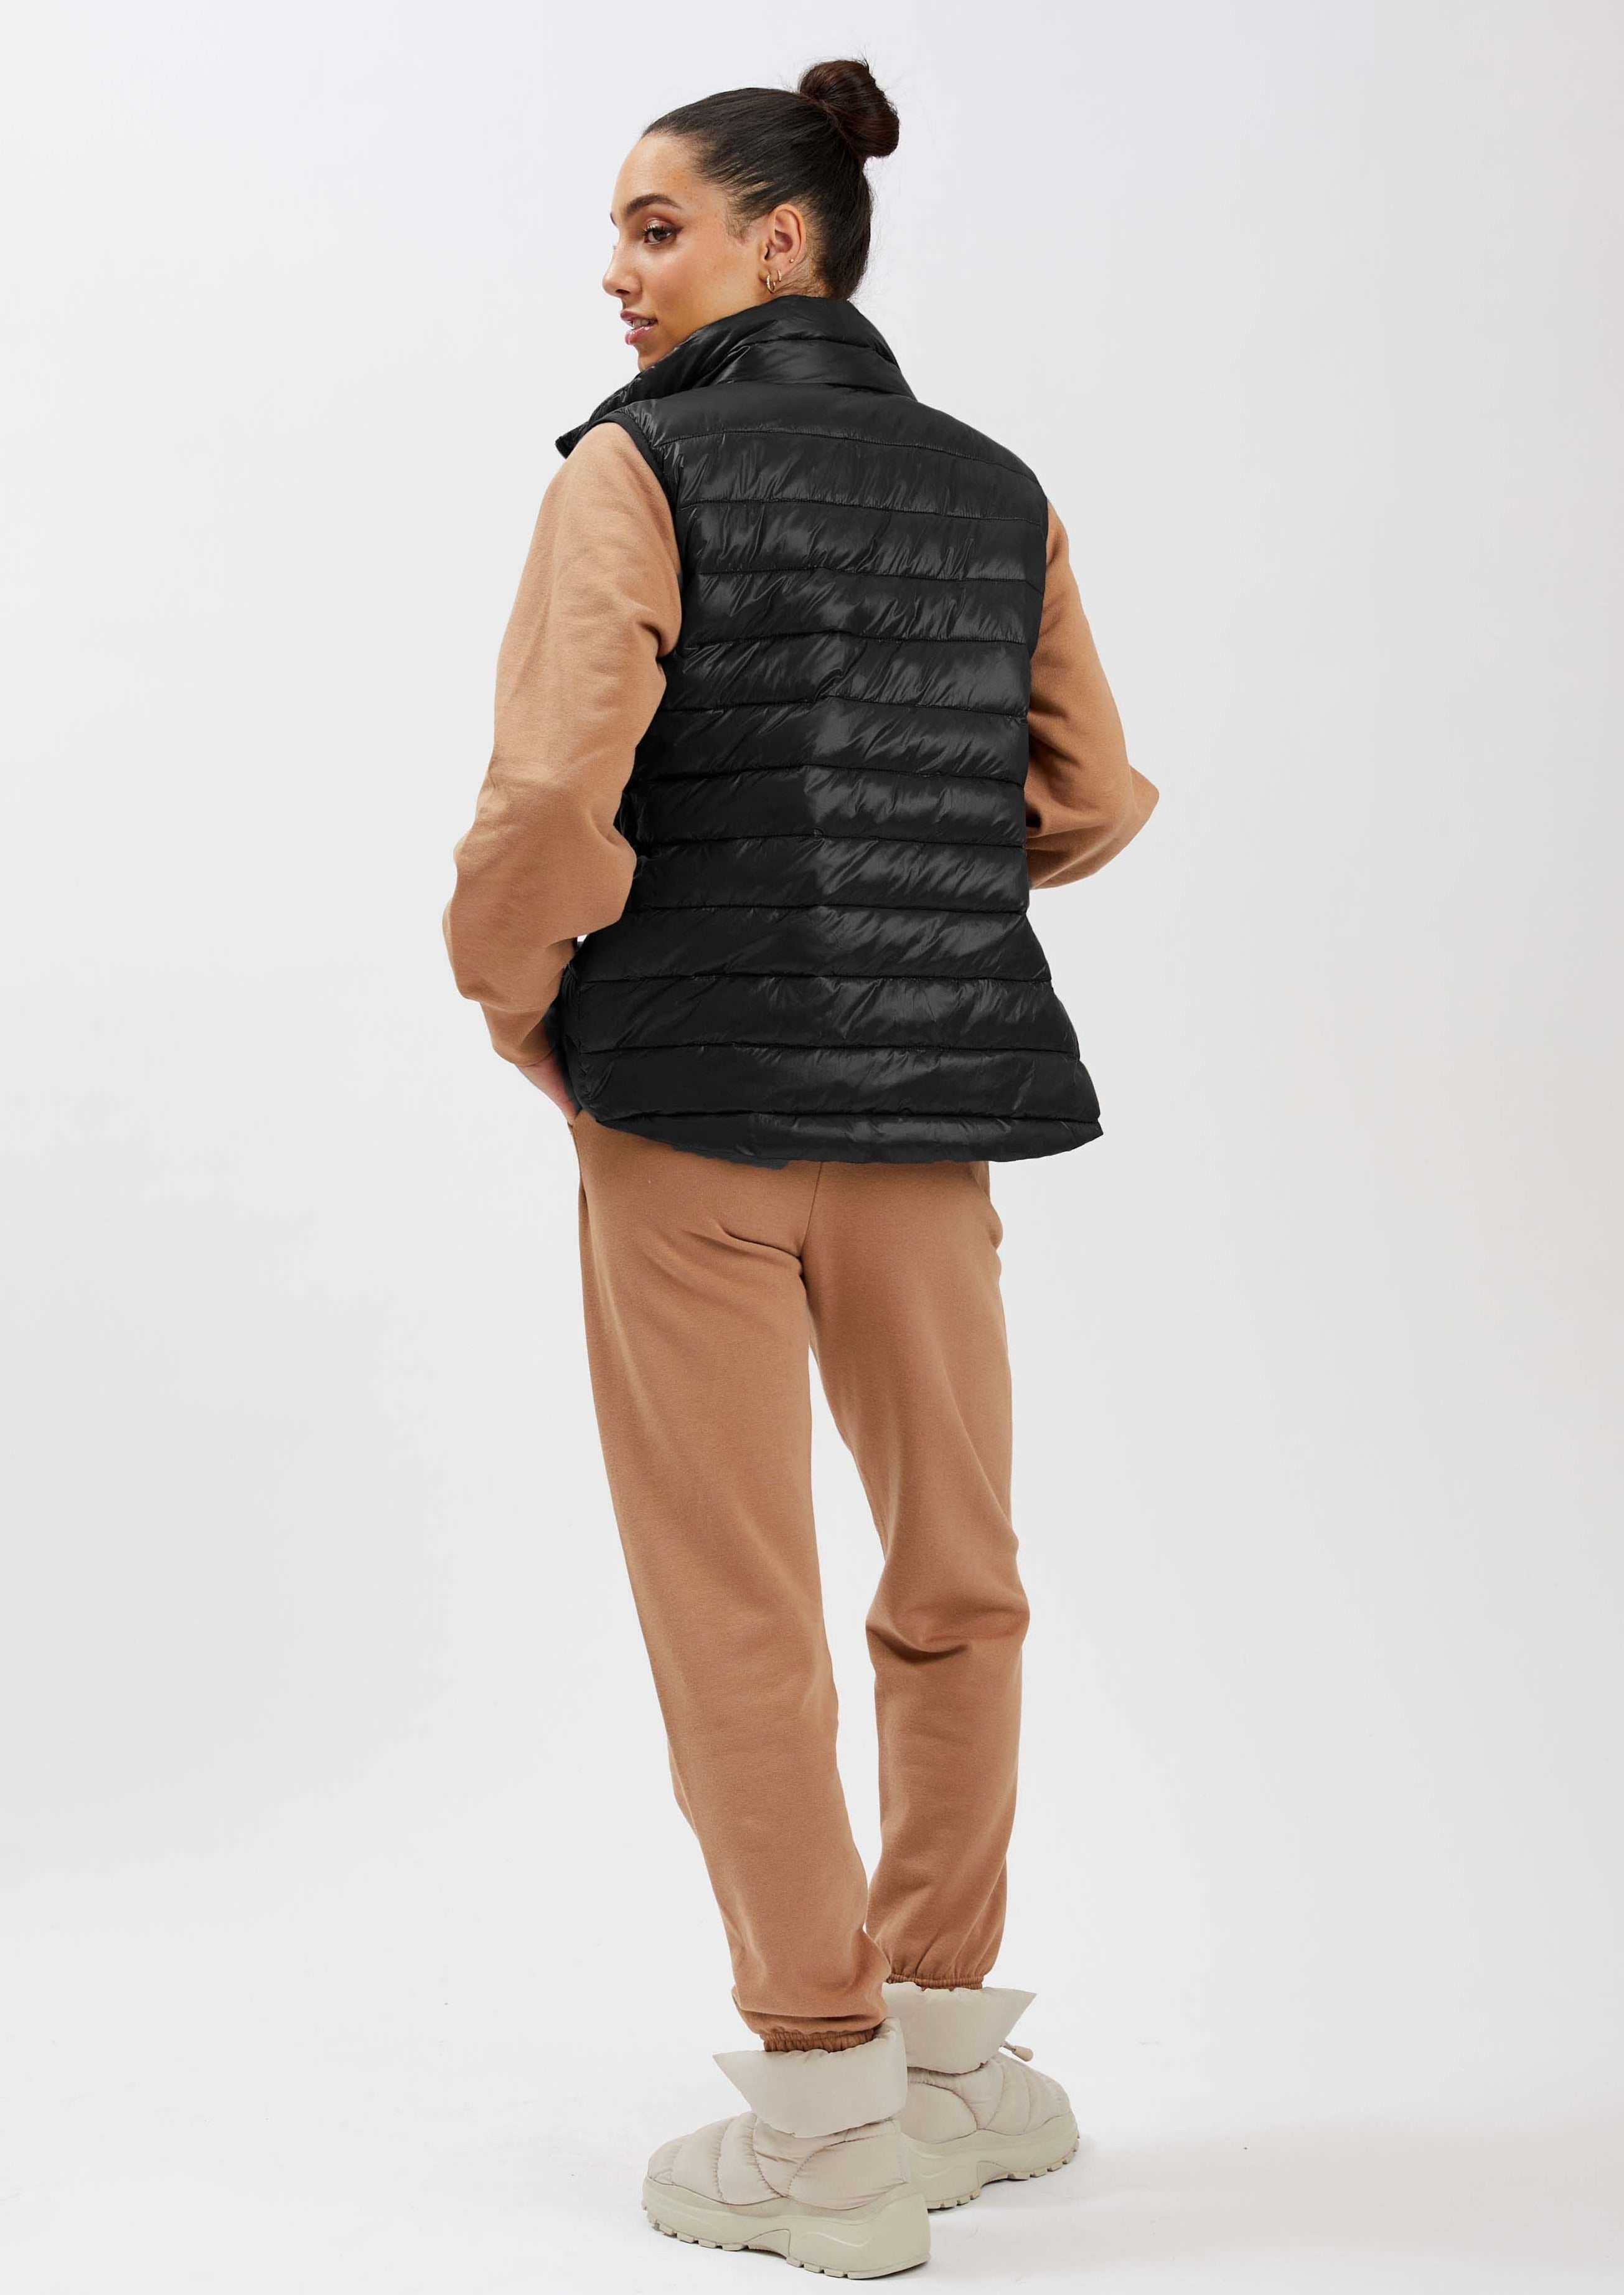 NOVILLE| Ultralight Vest